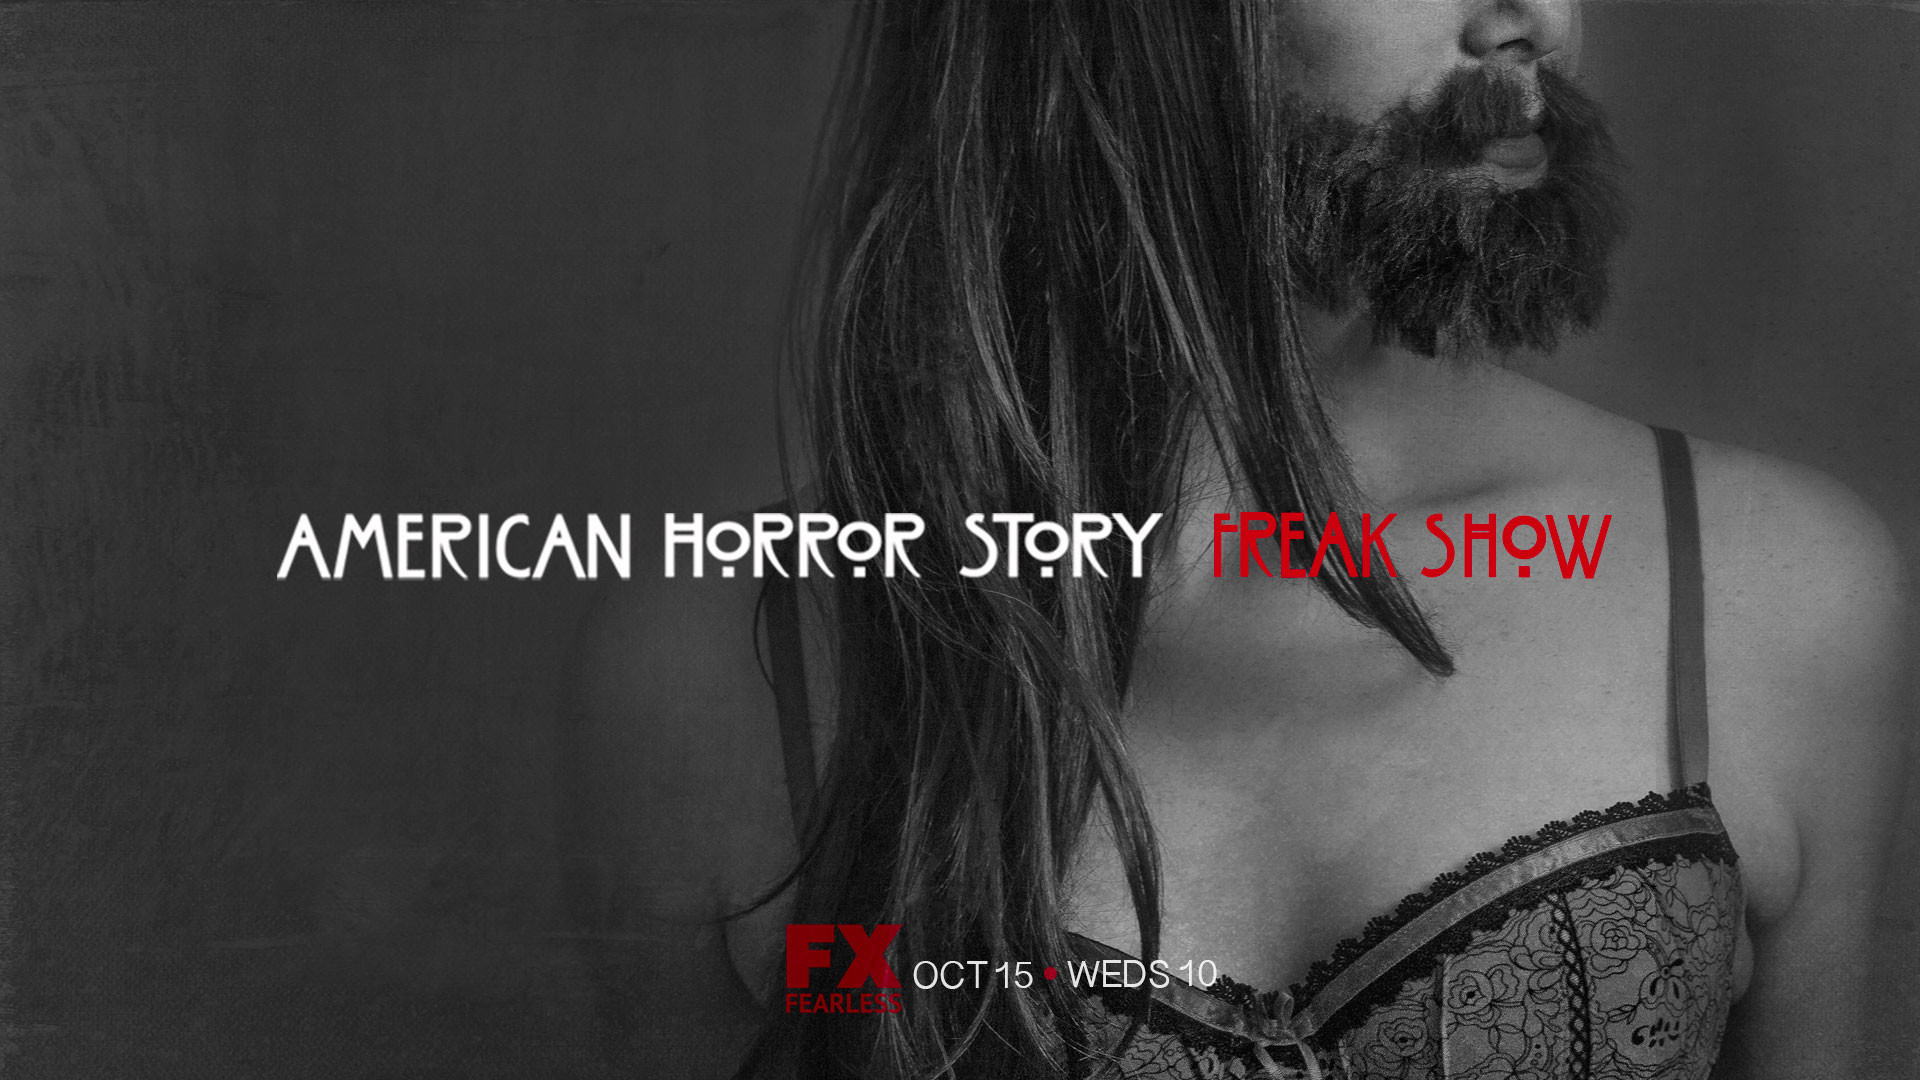 1920x1080 American Horror Story Freak Show Beauty Wallpaper